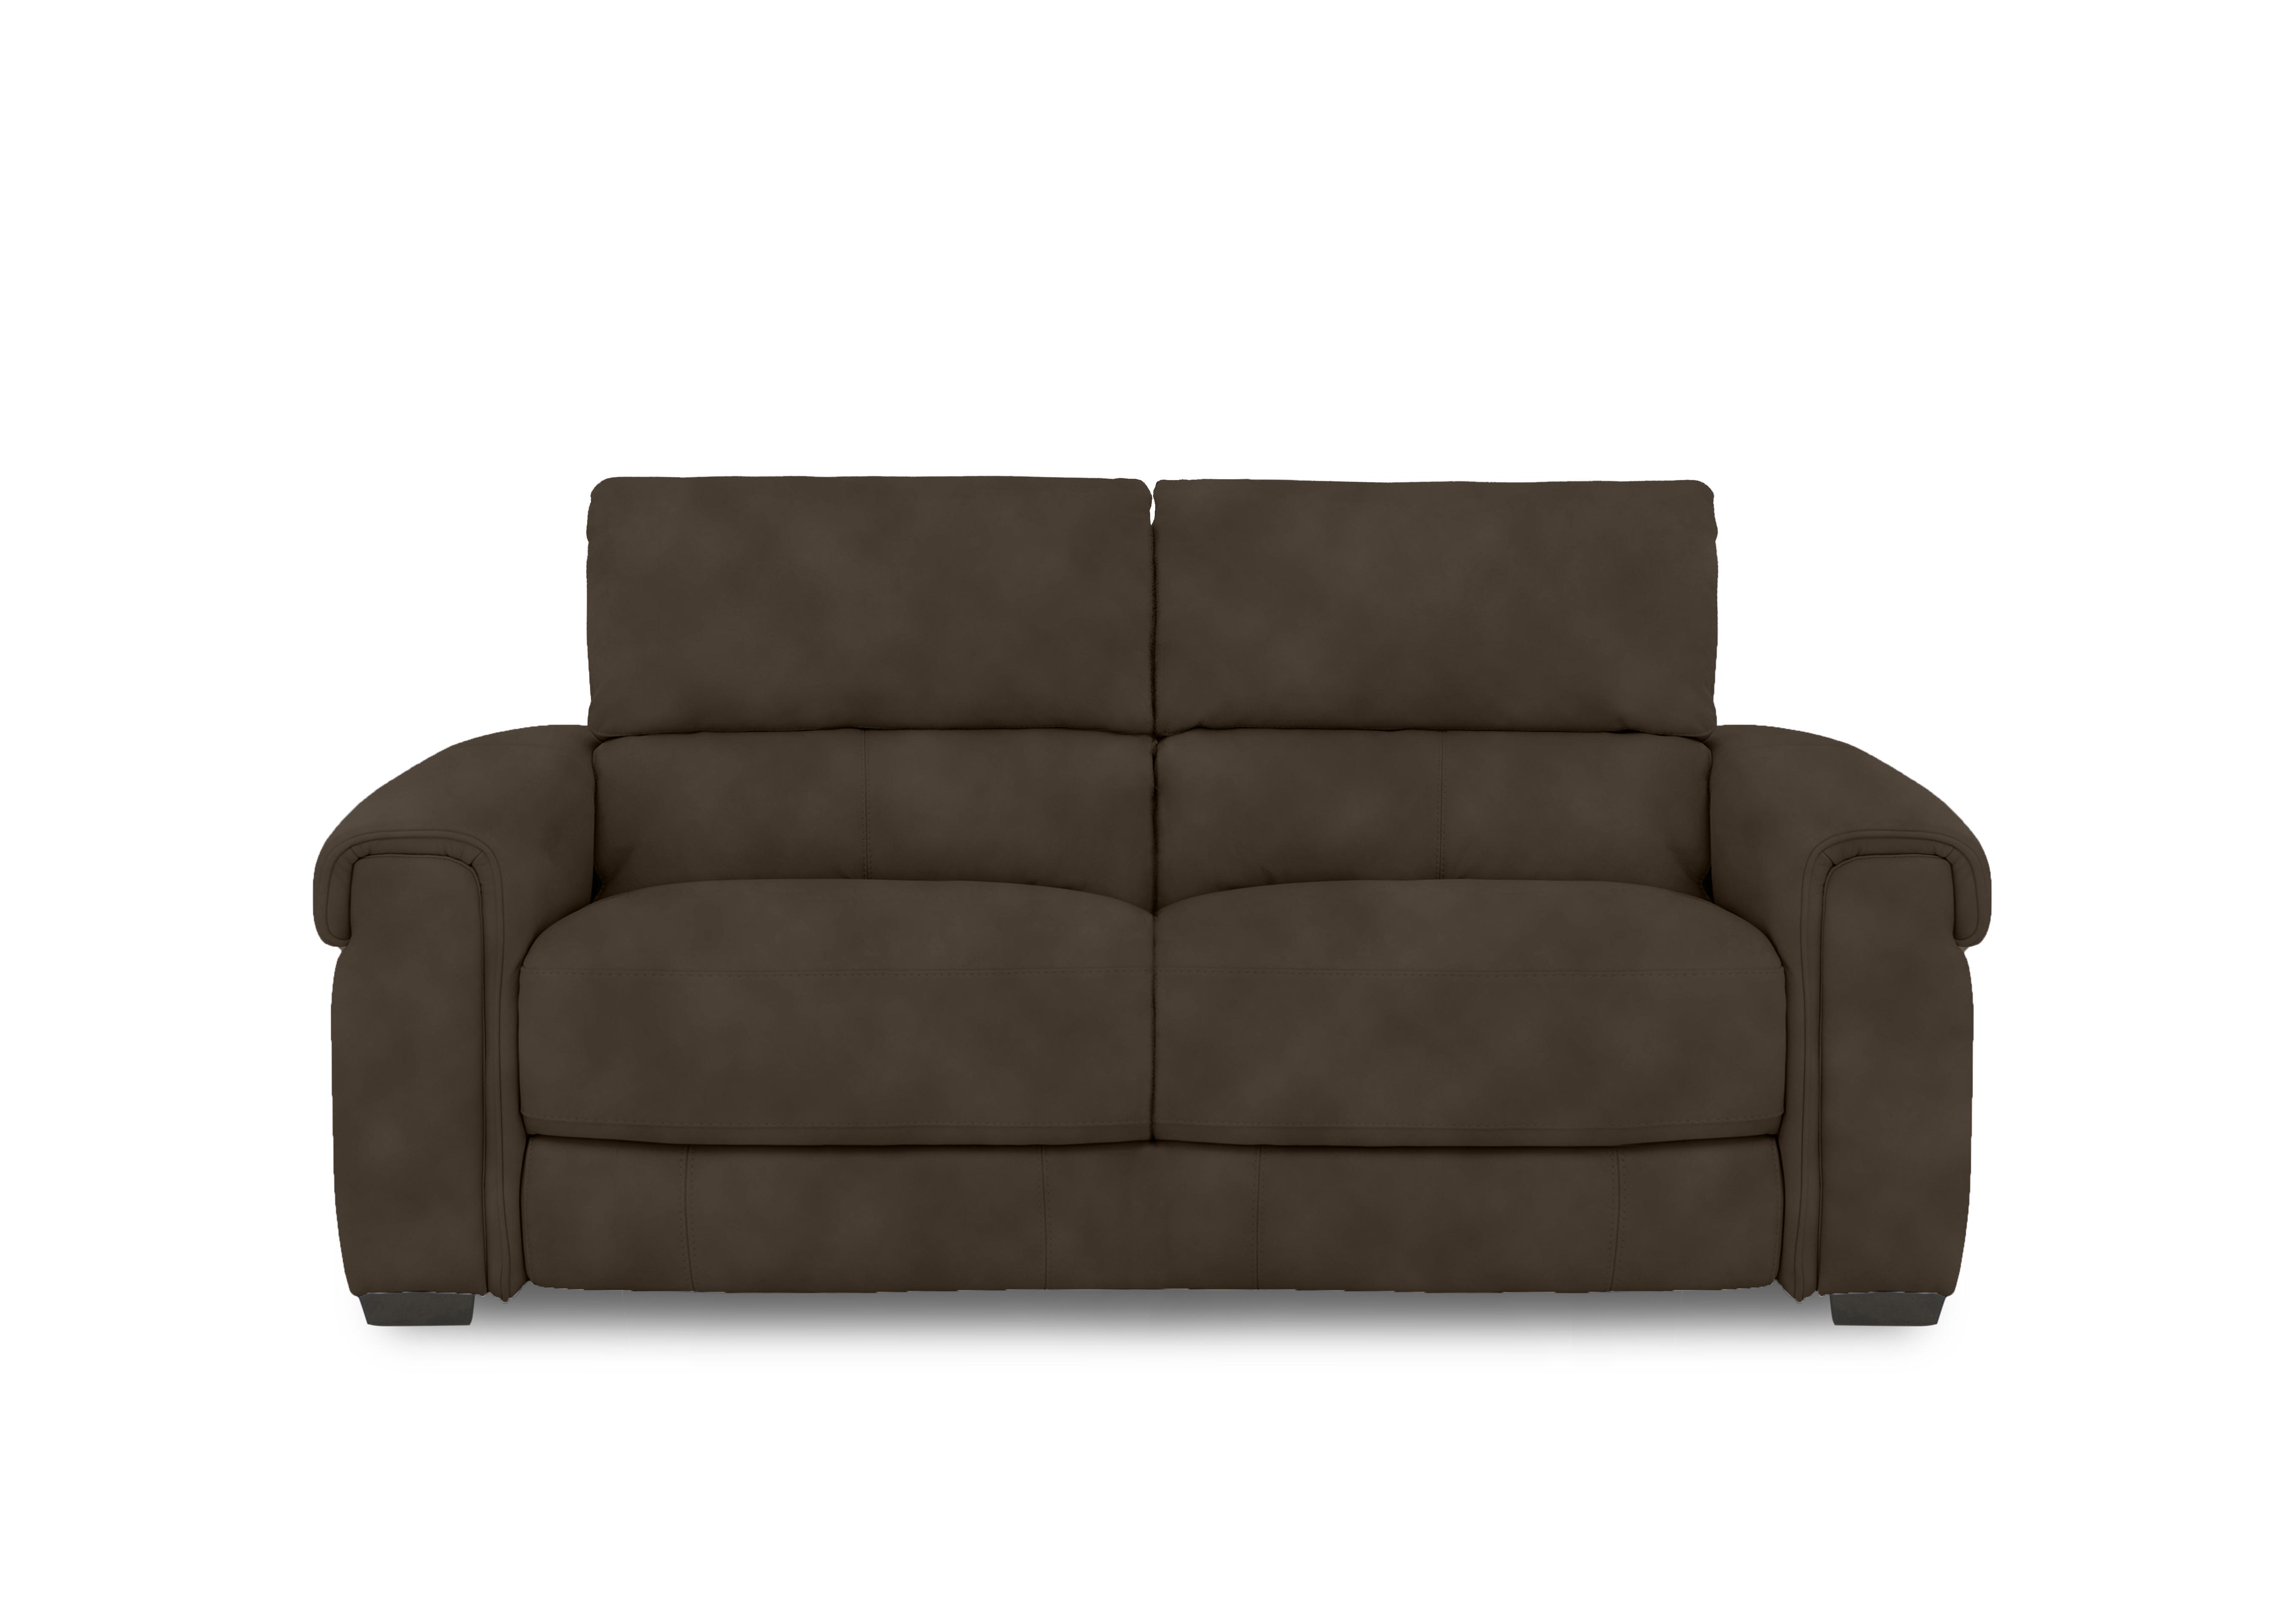 Nixon Fabric 3 Seater Sofa in Sfa-Pey-R04 Dark Chocolate on Furniture Village